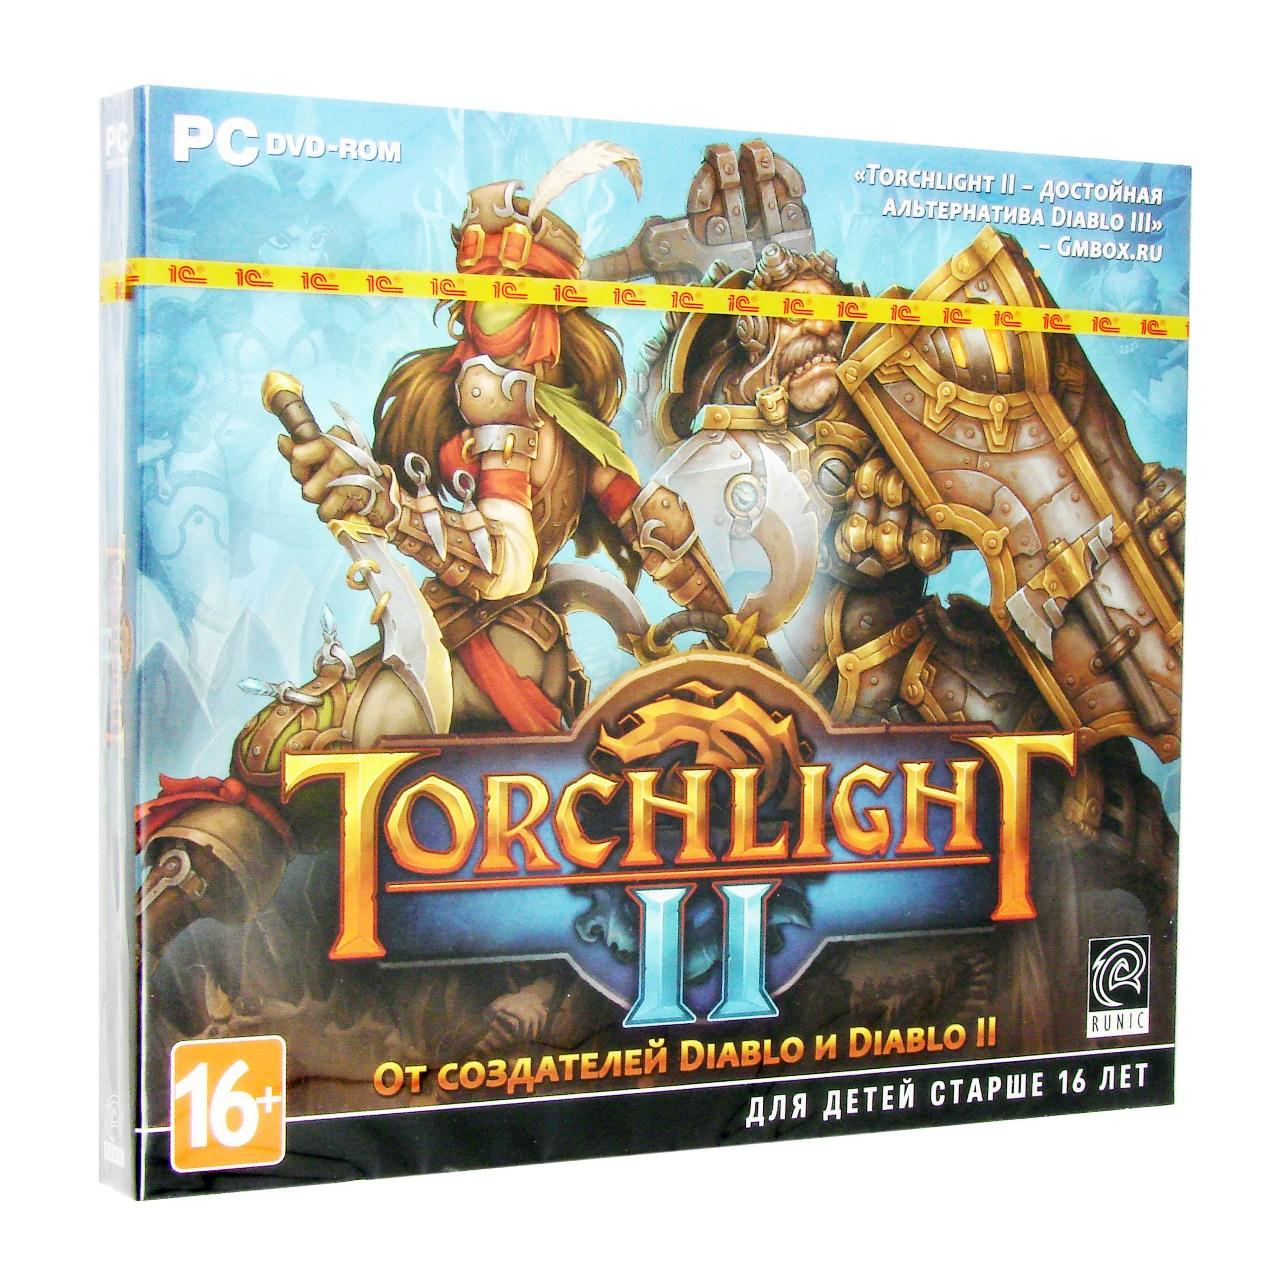 Компьютерный компакт-диск Torchlight 2 (PC), фирма "1С-СофтКлаб", 1DVD